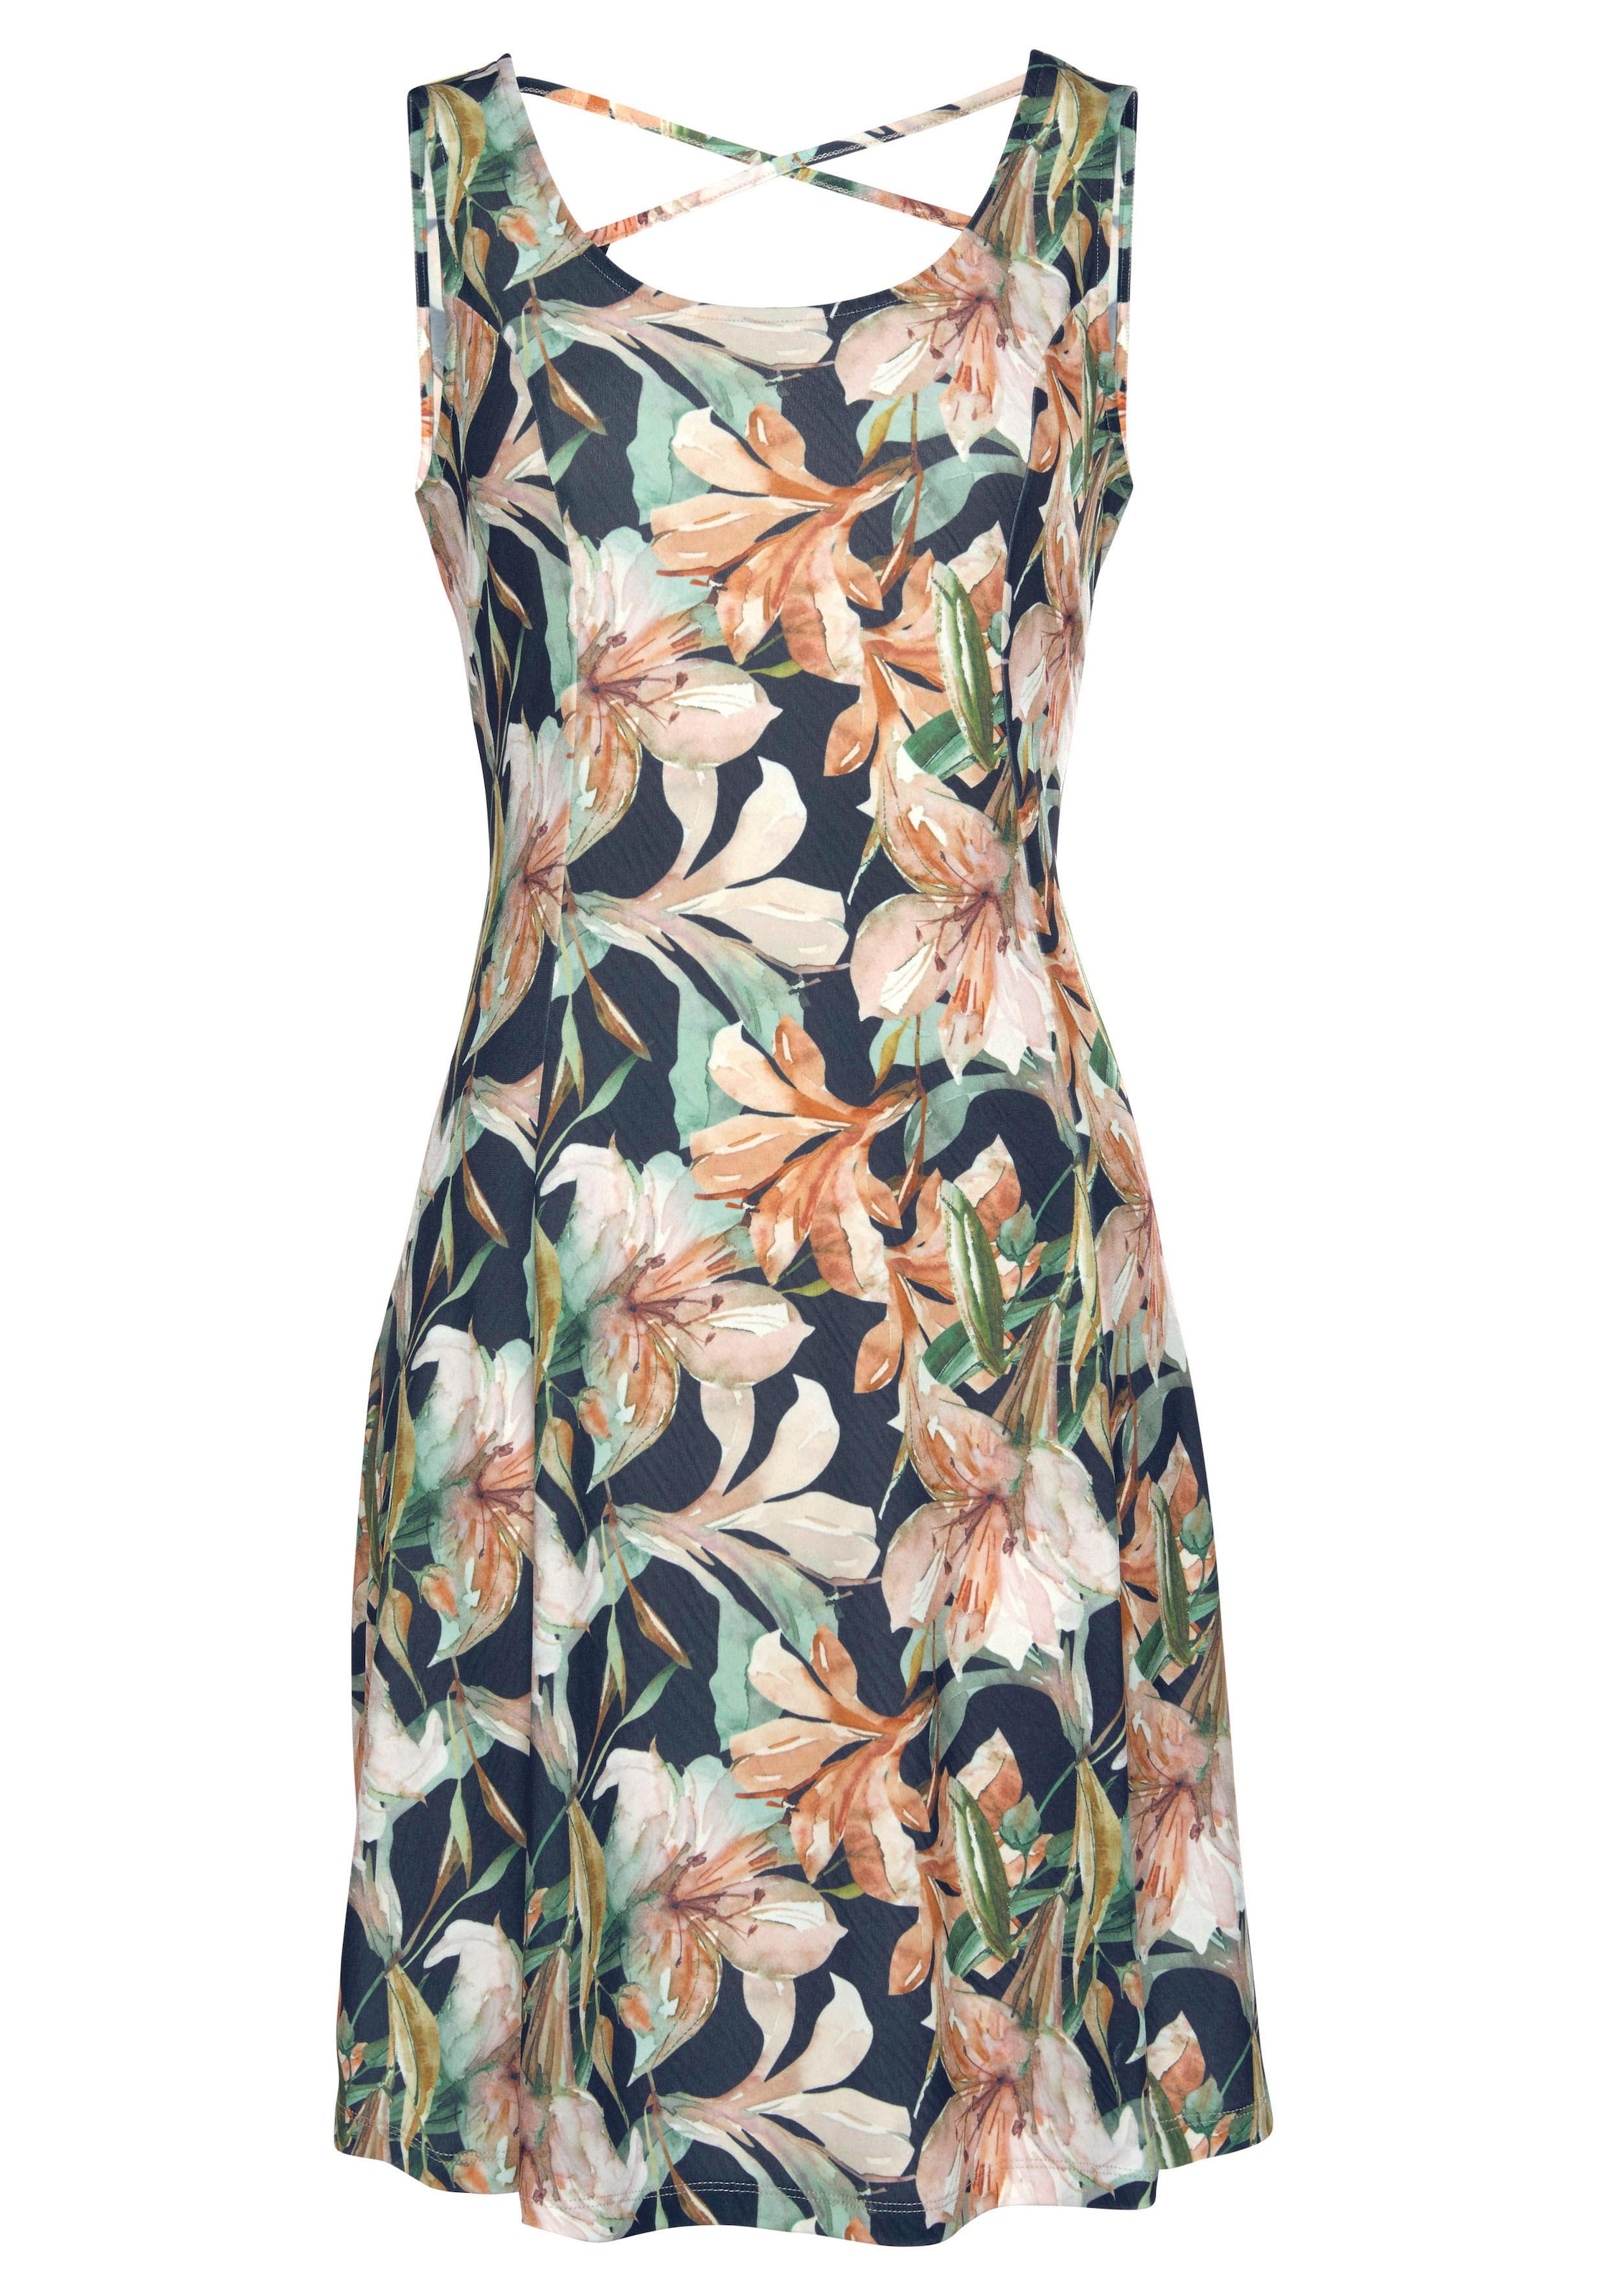 LASCANA Sommerkleid, mit tiefem Rückenausschnitt im Blumenprint, Minikleid, Strandkleid